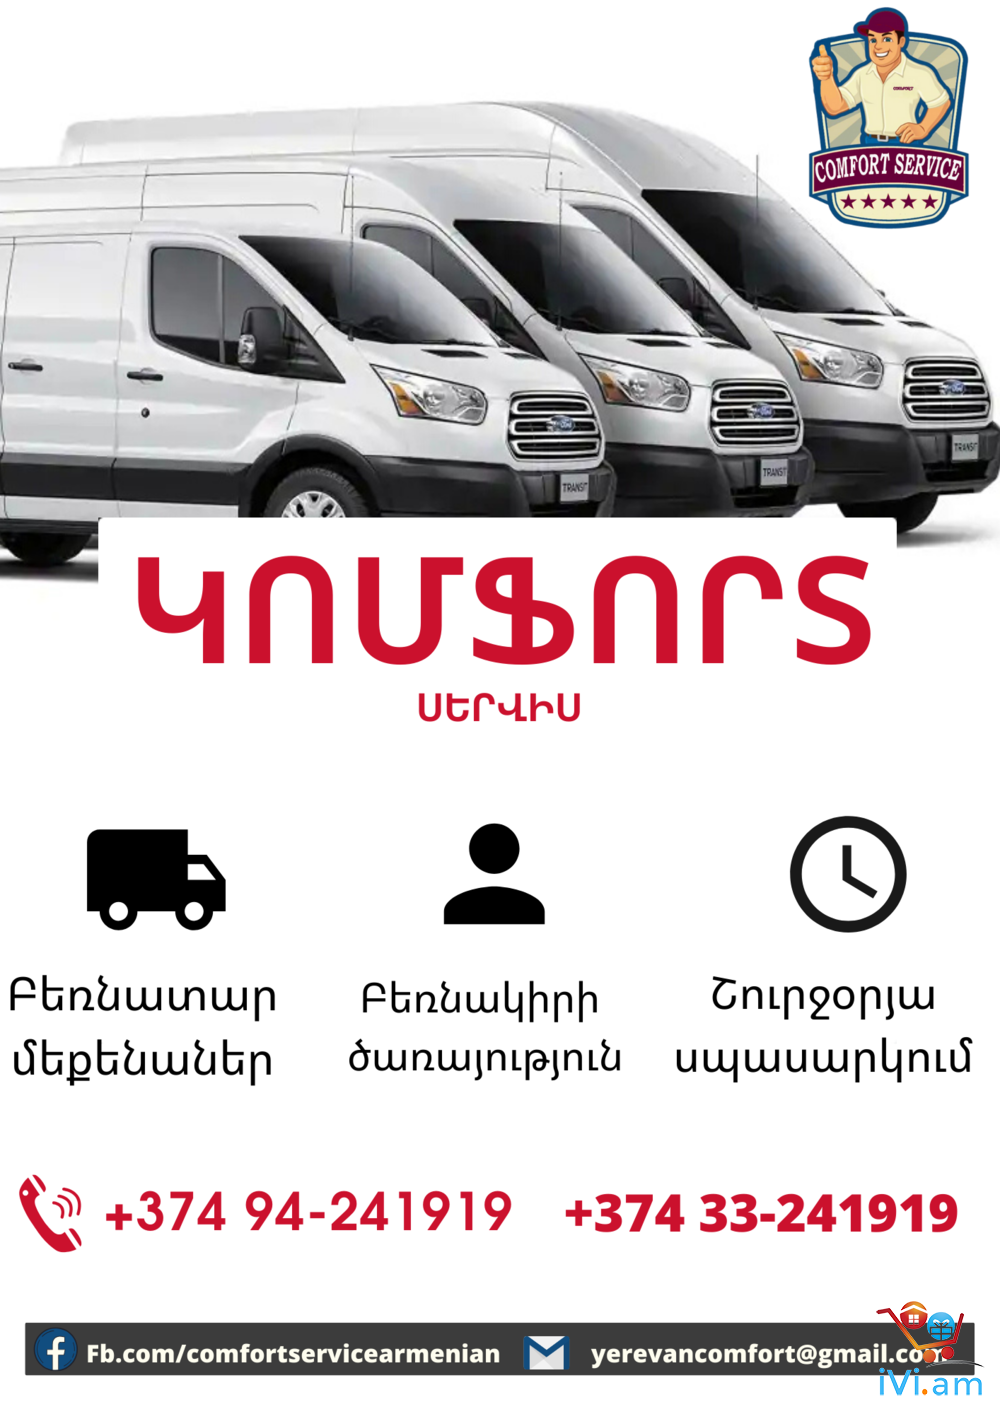 Ереван транспортные компании. Грузоперевозки Ереван. Такси комфорт плюс Ереван. Comfort service.